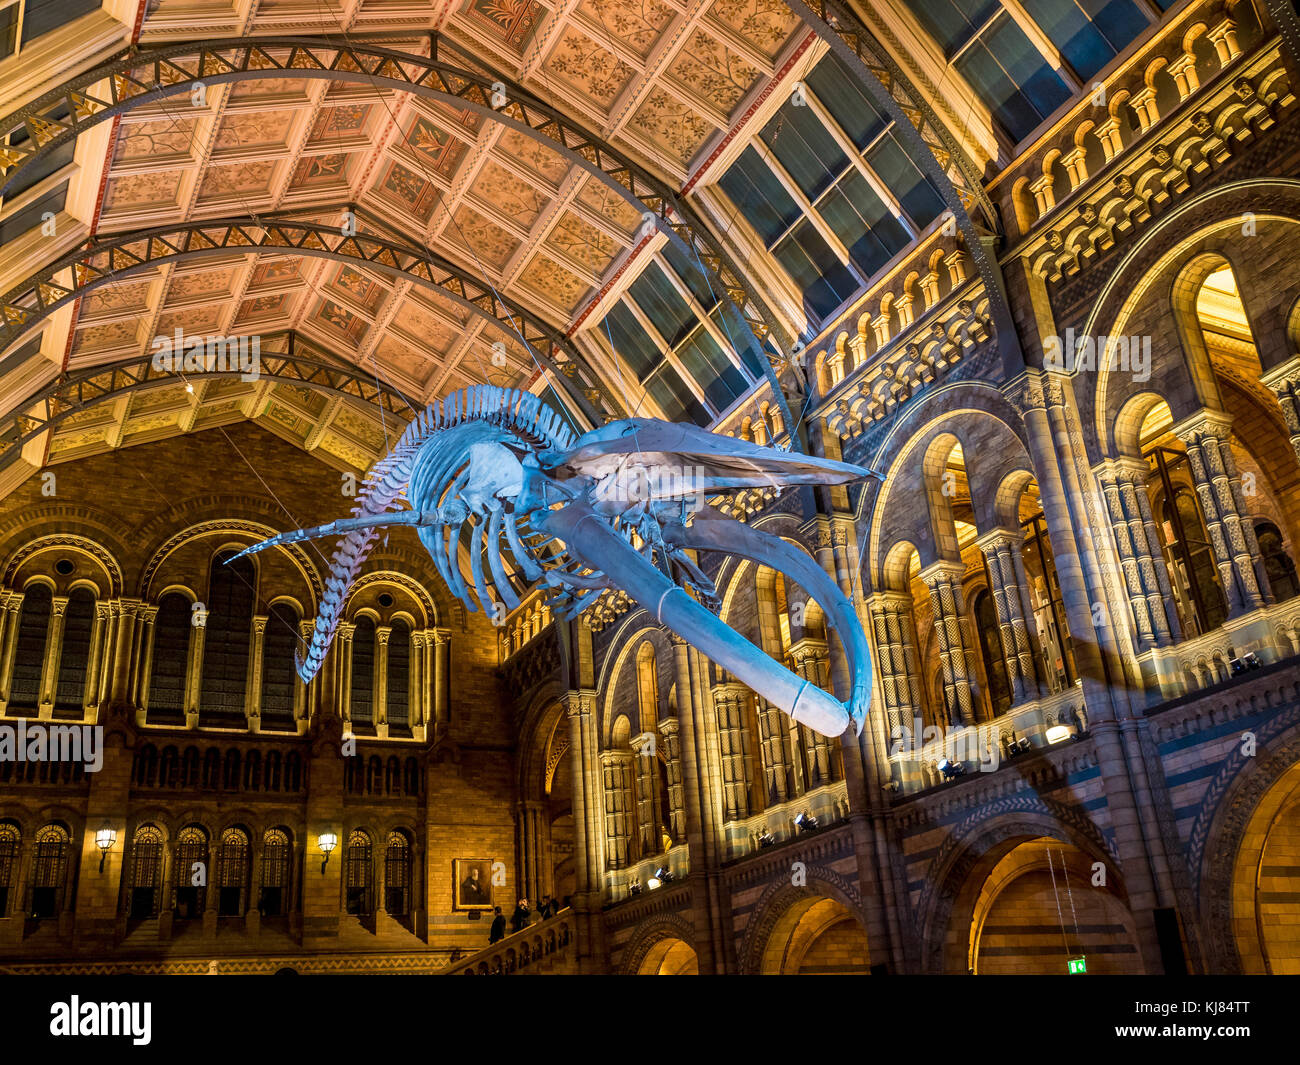 Esqueleto de ballena azul llamado Esperanza, colgando en el Hintze Hall, del Museo de Historia Natural de Londres, Reino Unido. Foto de stock